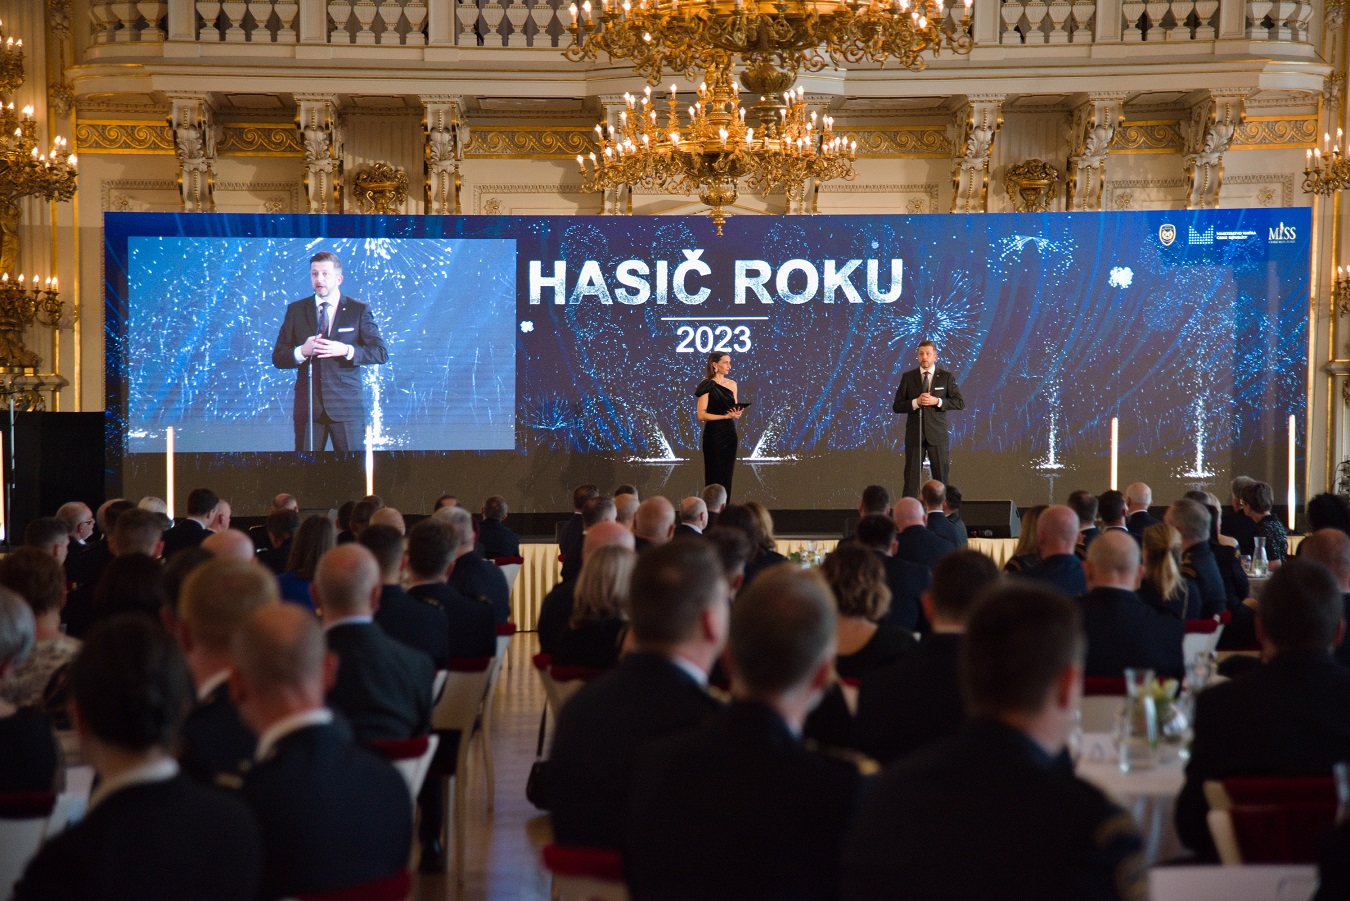 Ministr vnitra Vít Rakušan přivítal hosty slavnostního večera Hasič roku 2023.jpg